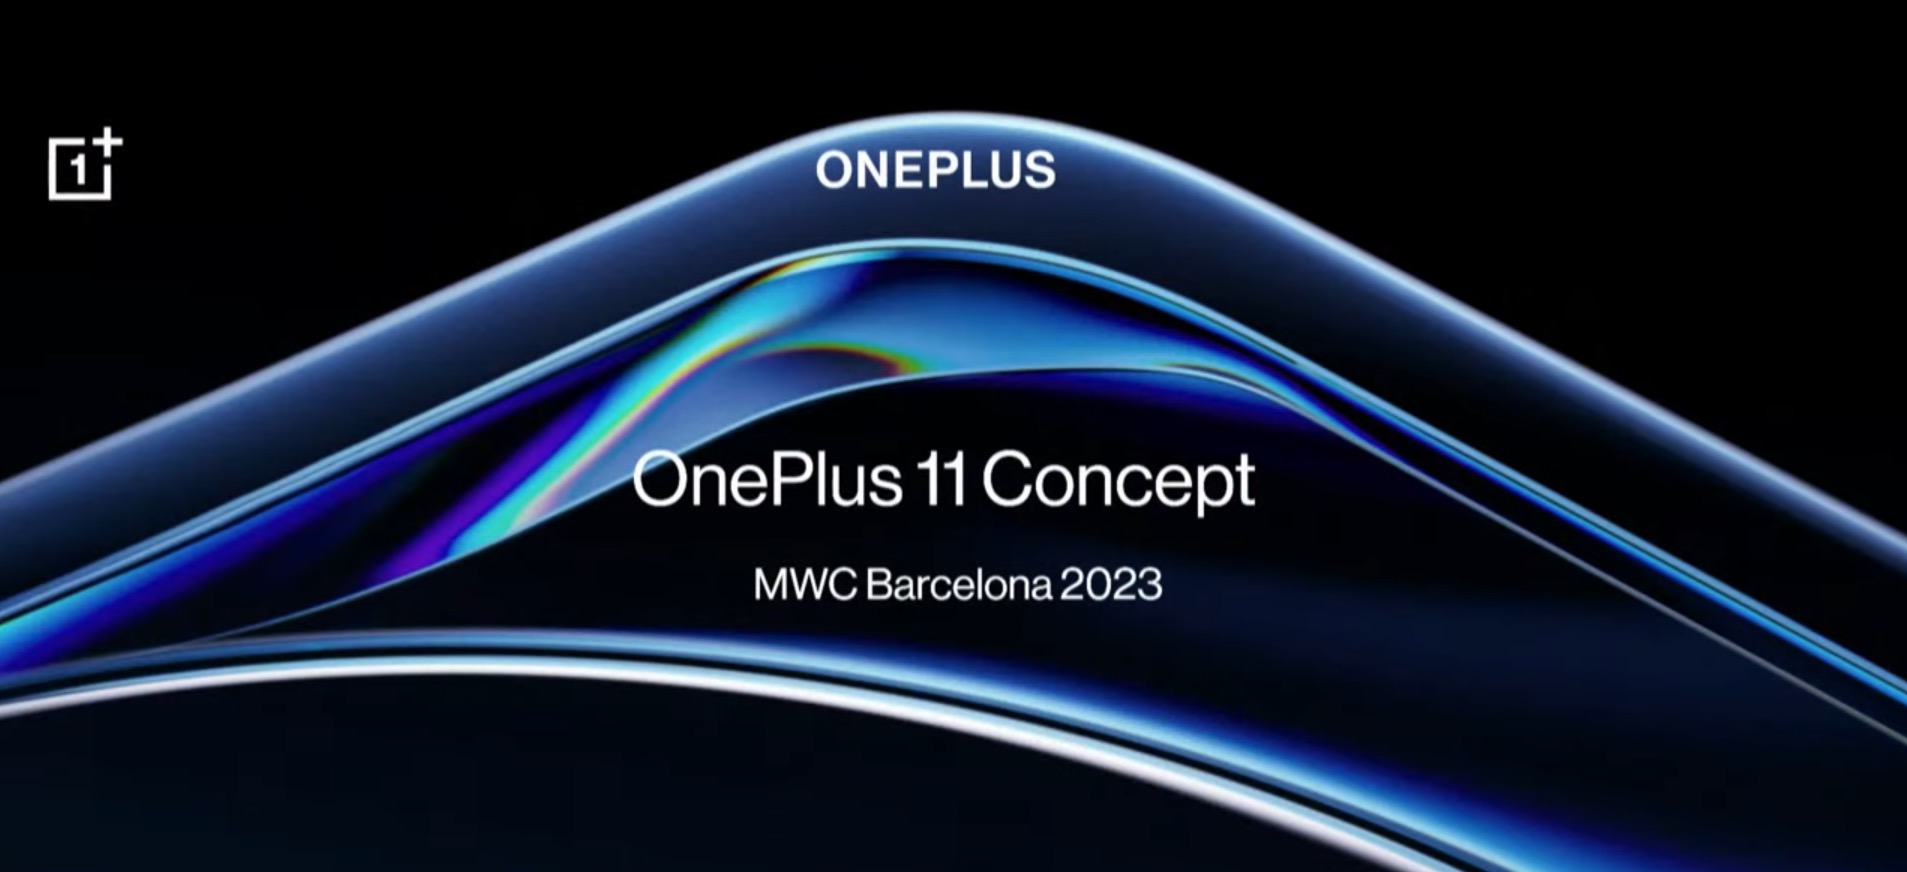 OnePlus stellt auf dem MWC 2023 ein Smartphone mit innovativer Zukunftstechnologie vor